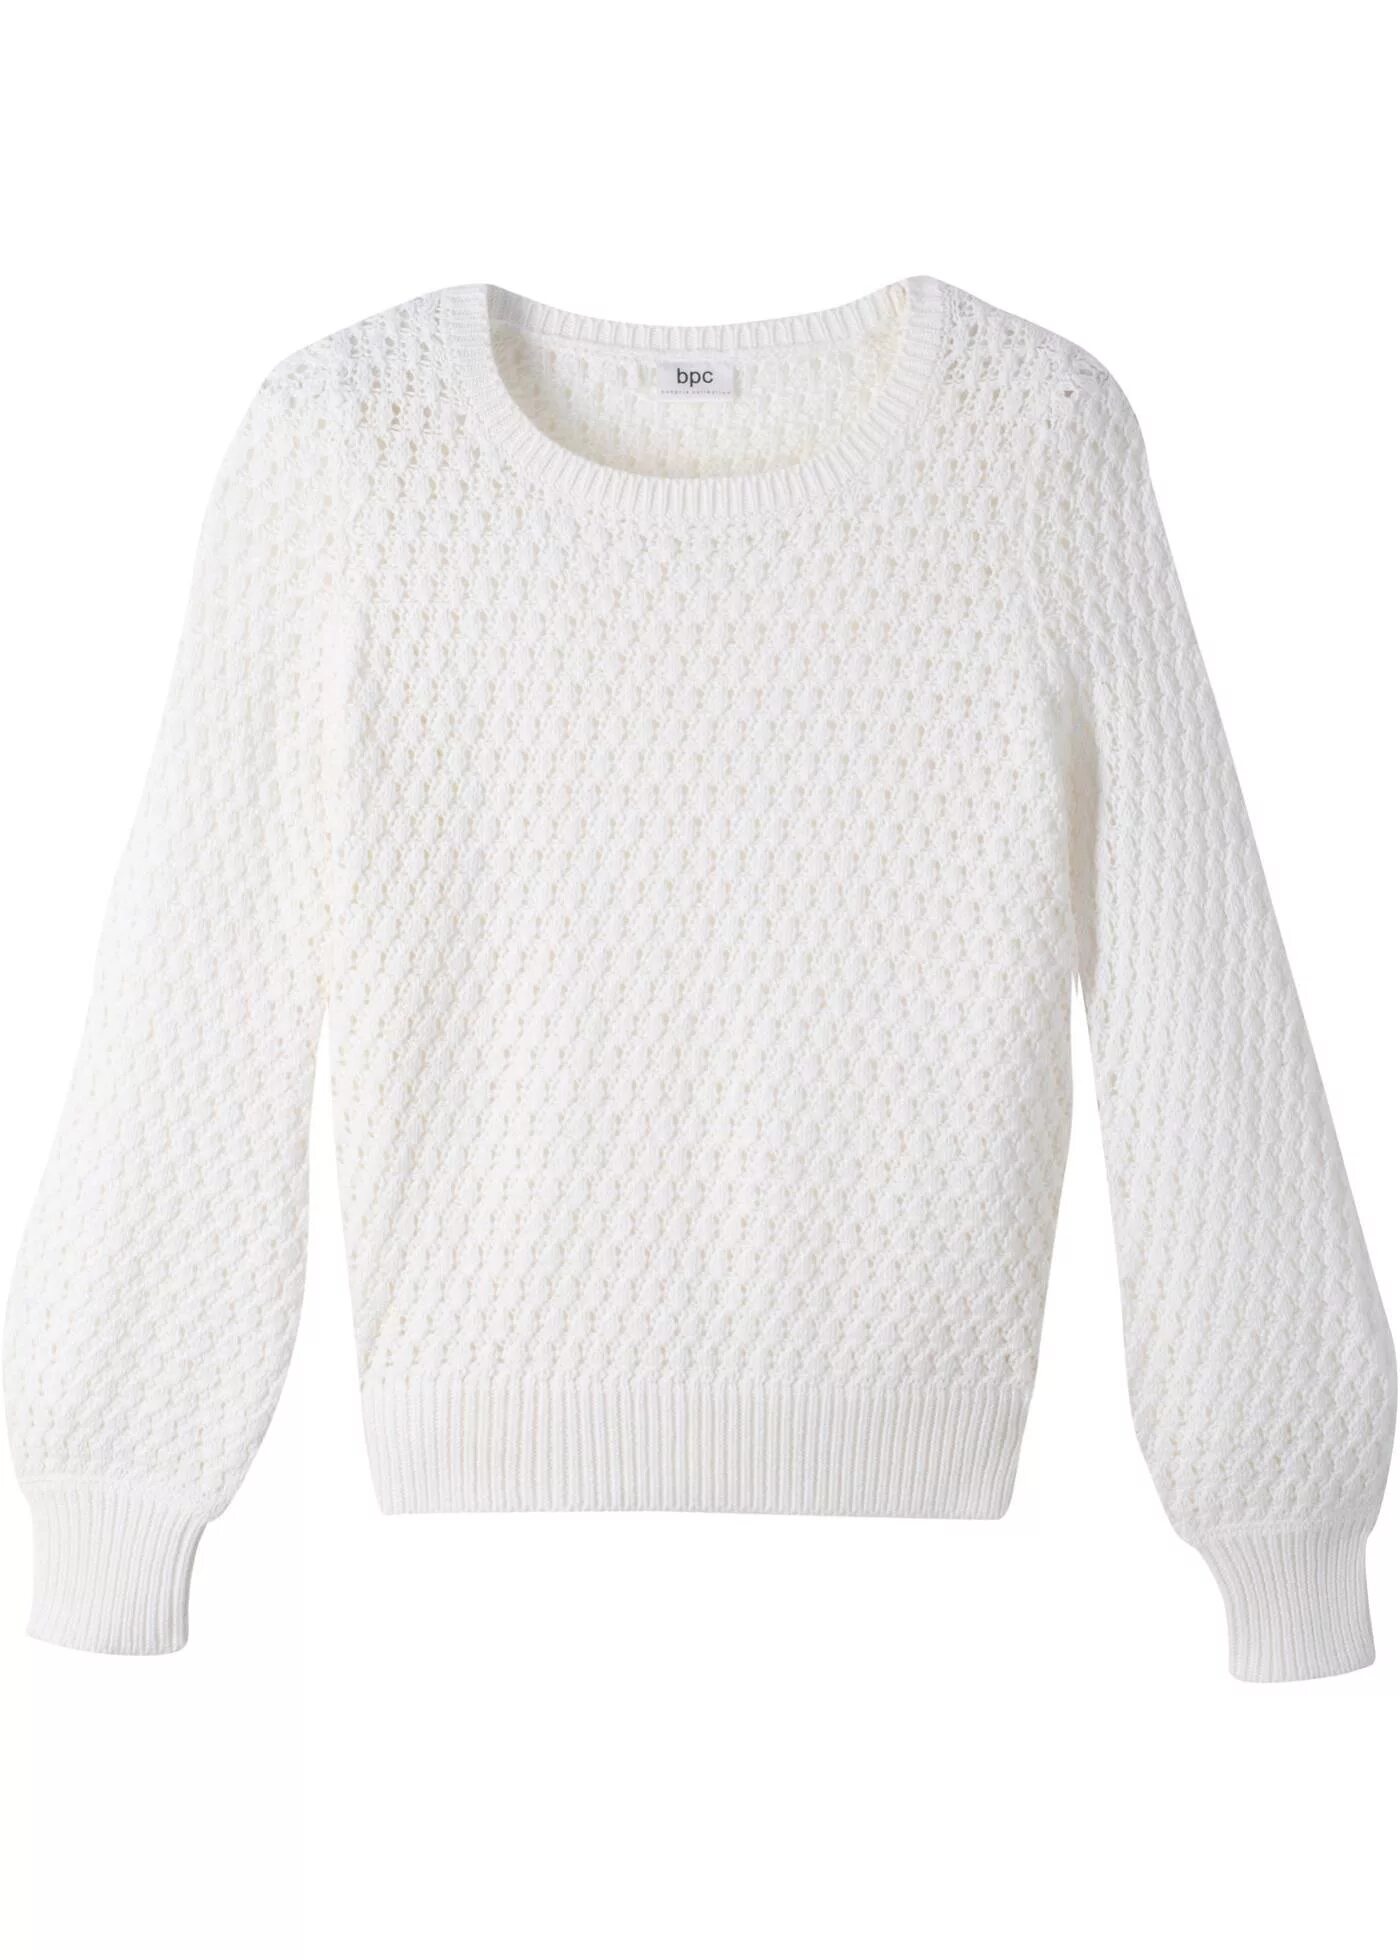 Свитер женский Sisley 1244m2190. Белый свитер. Белый свитер женский. Белая кофта. Белые джемпера купить